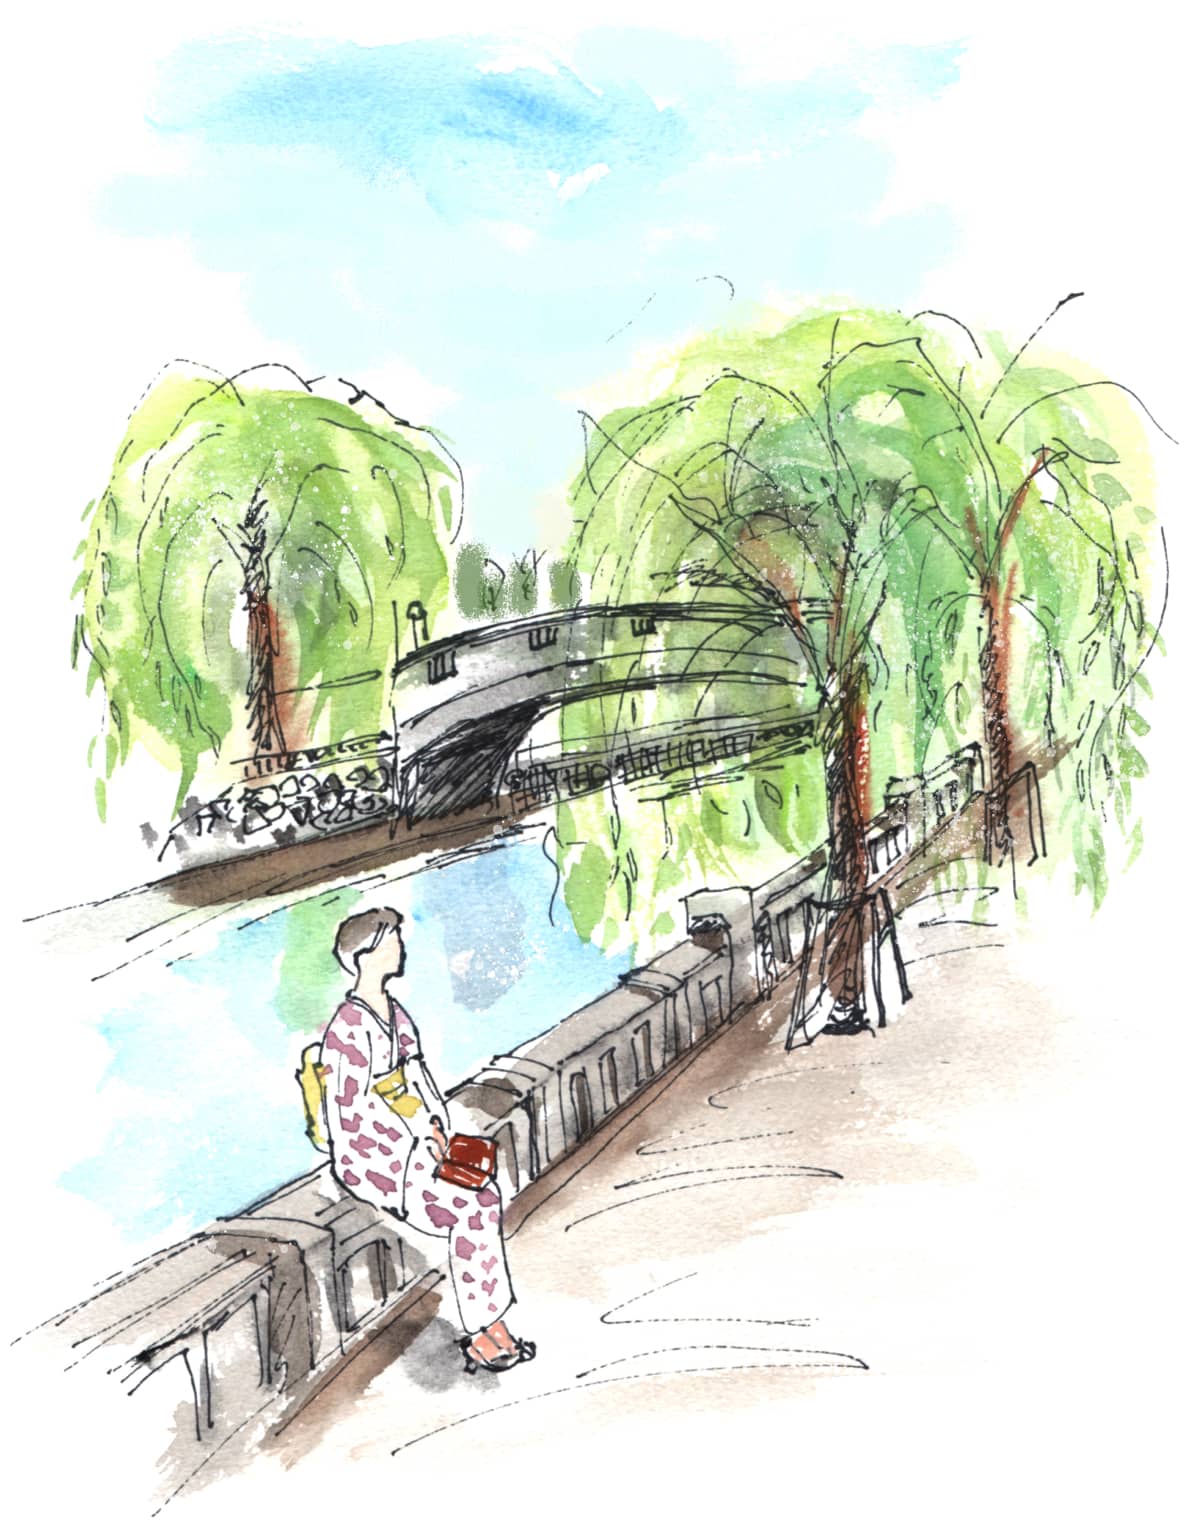 城崎温泉の中心を流れる大溪川の欄干に腰掛ける浴衣姿の女性を描写したイラスト